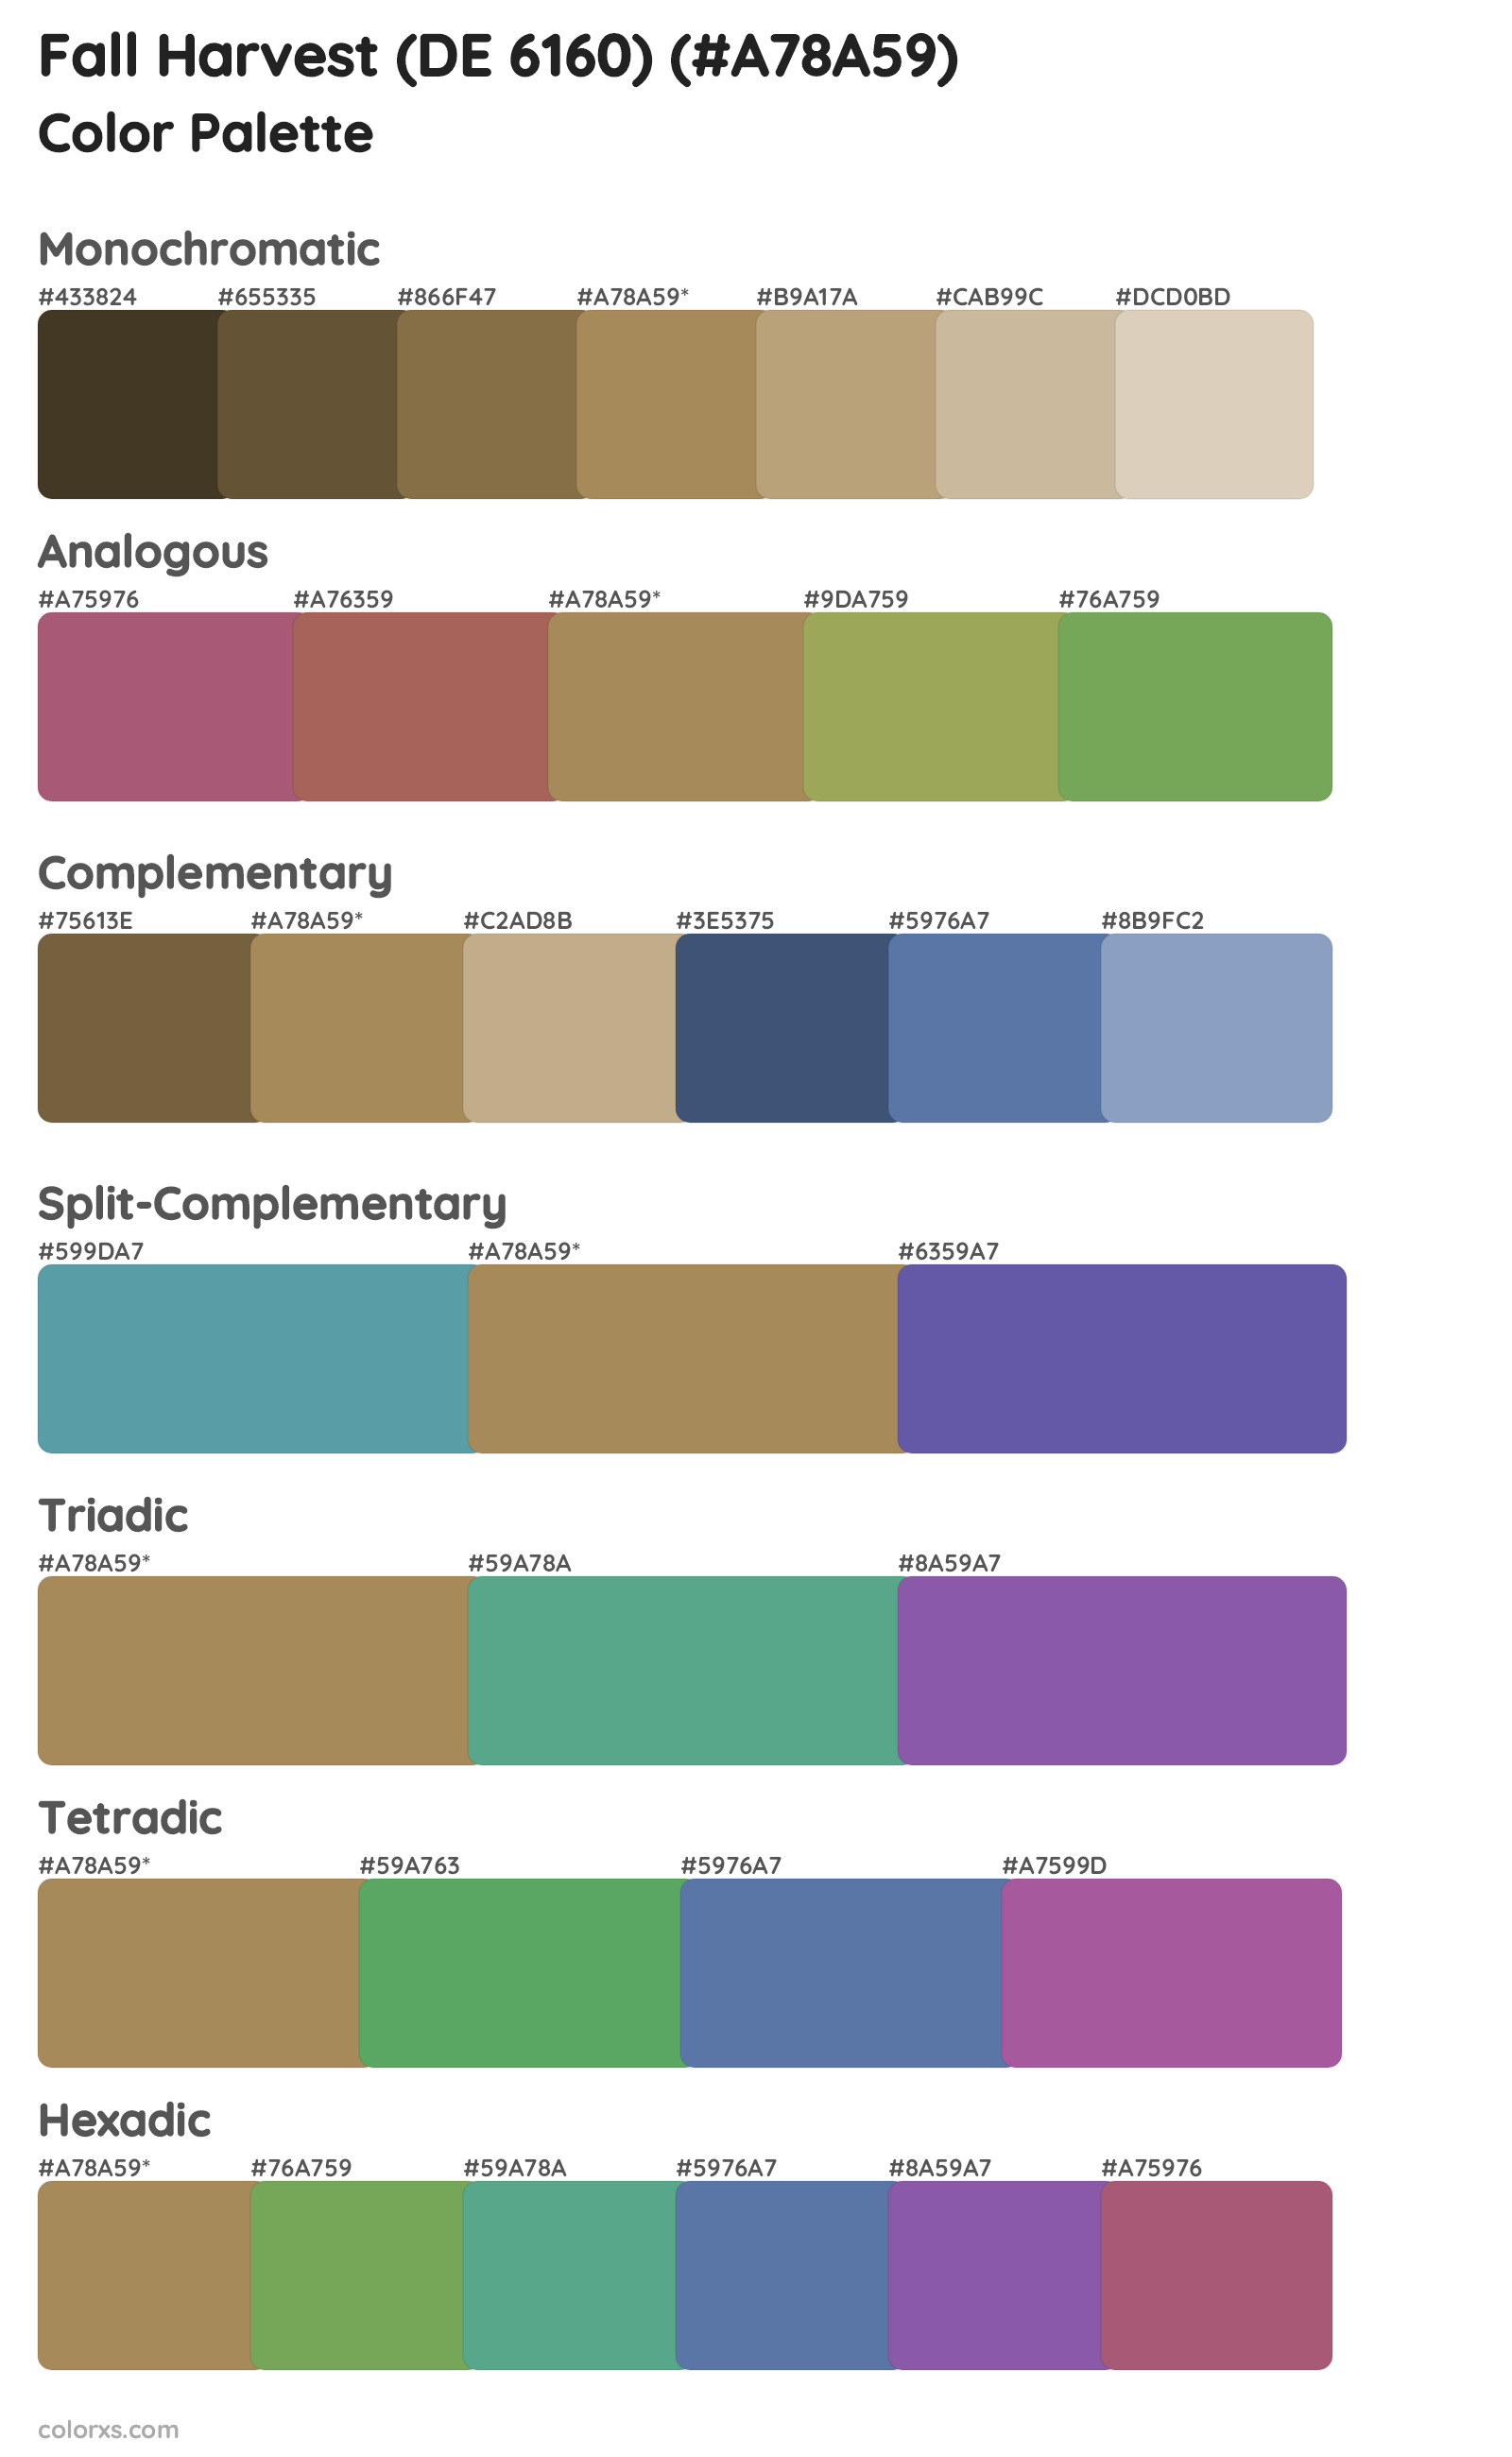 Fall Harvest (DE 6160) Color Scheme Palettes